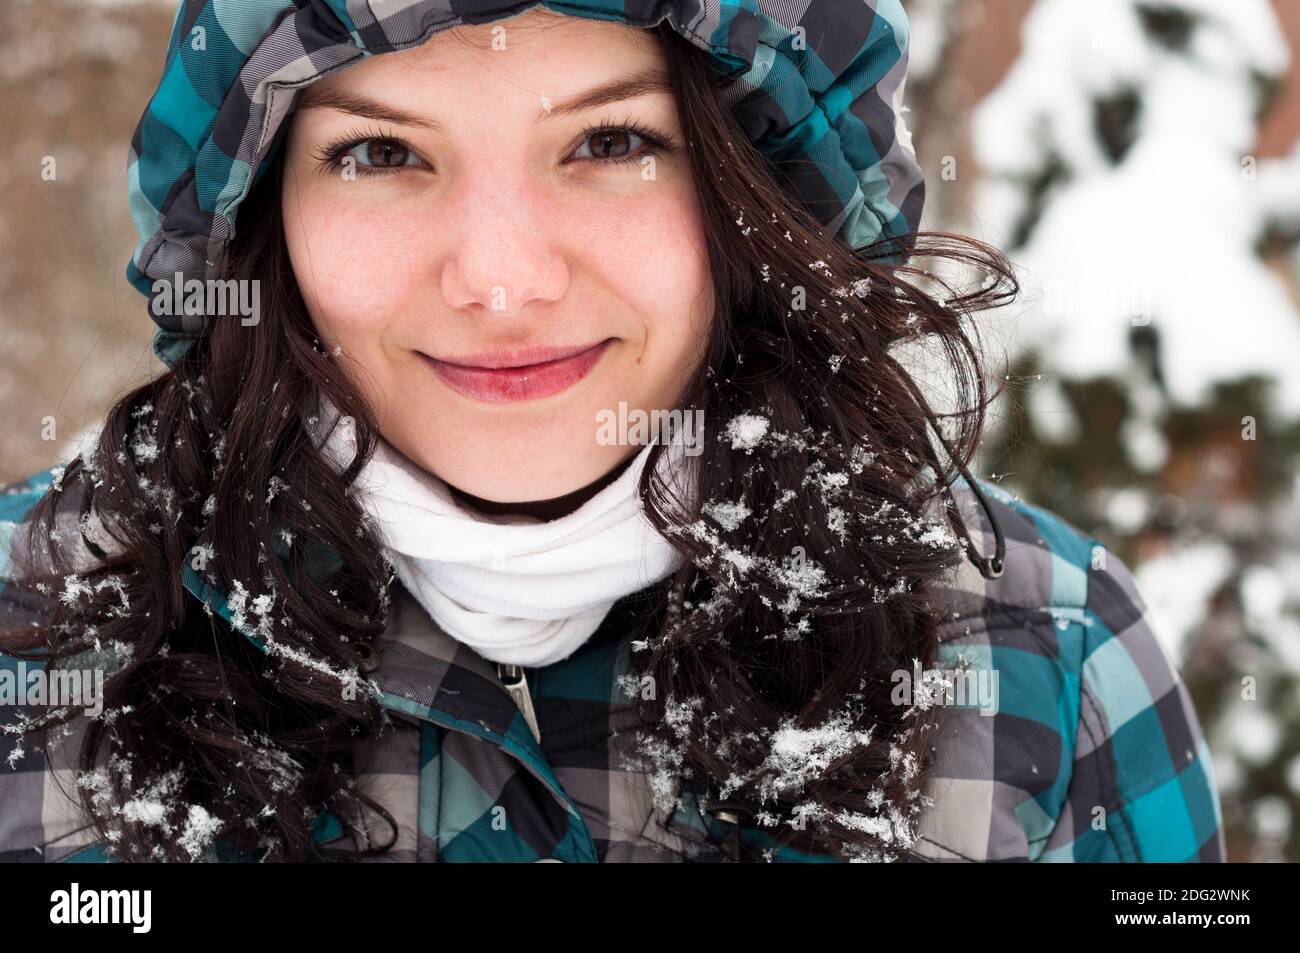 Foto de primer plano de un adulto joven en invierno Foto de stock